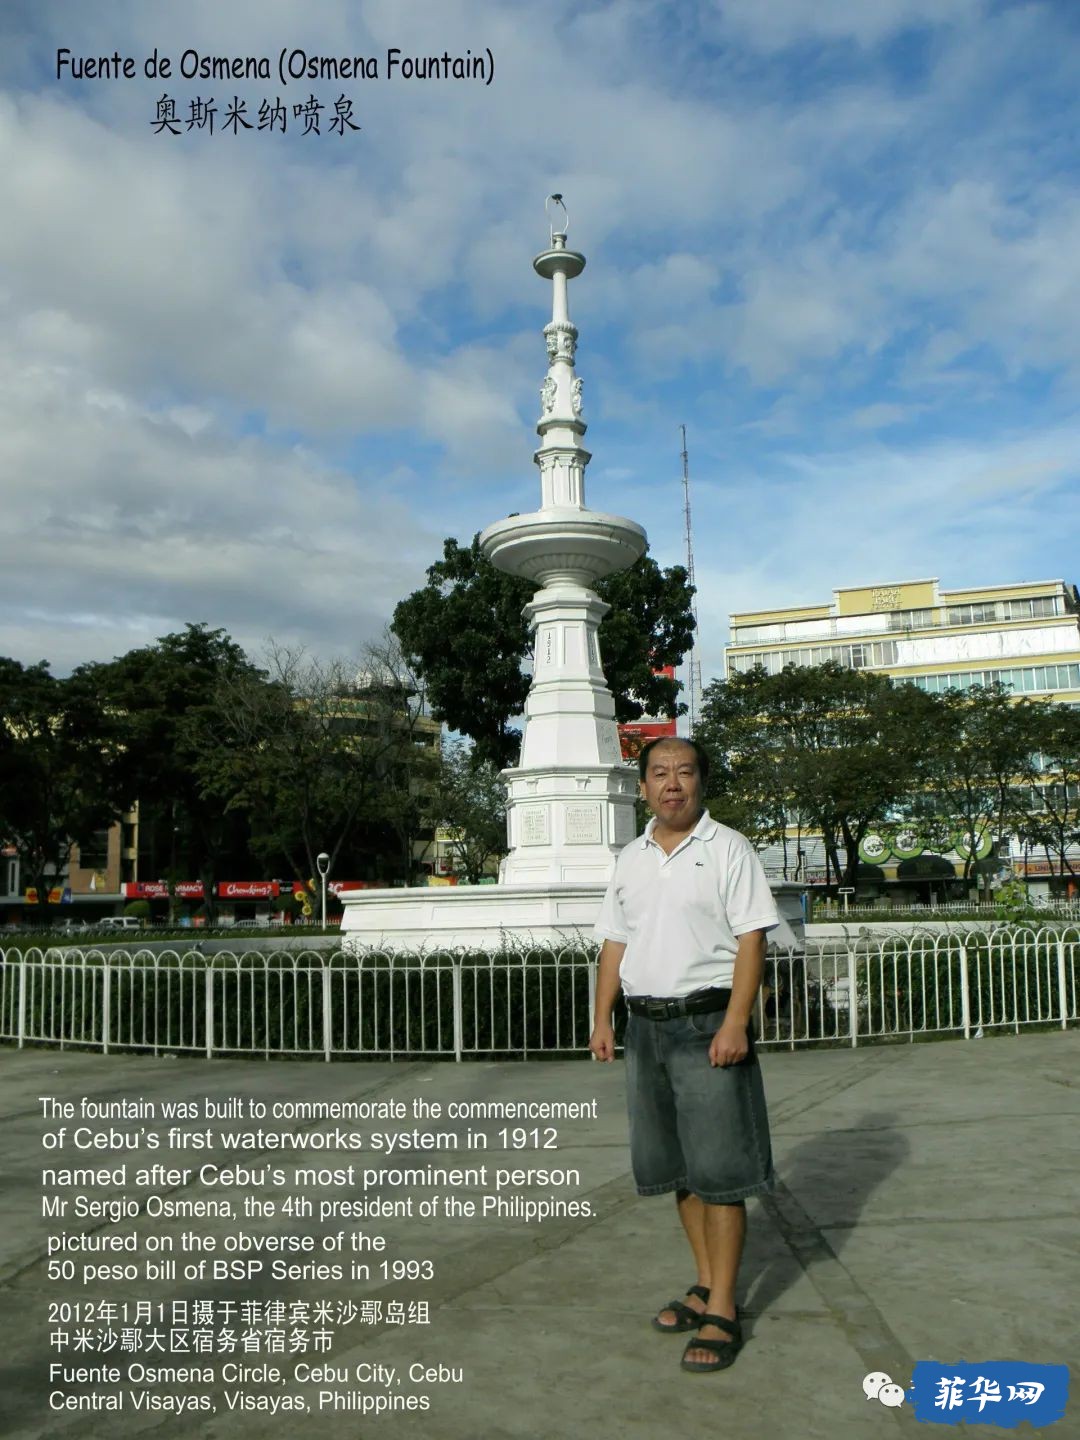 菲律宾中部最大城市宿务城区不可错过的十大景点